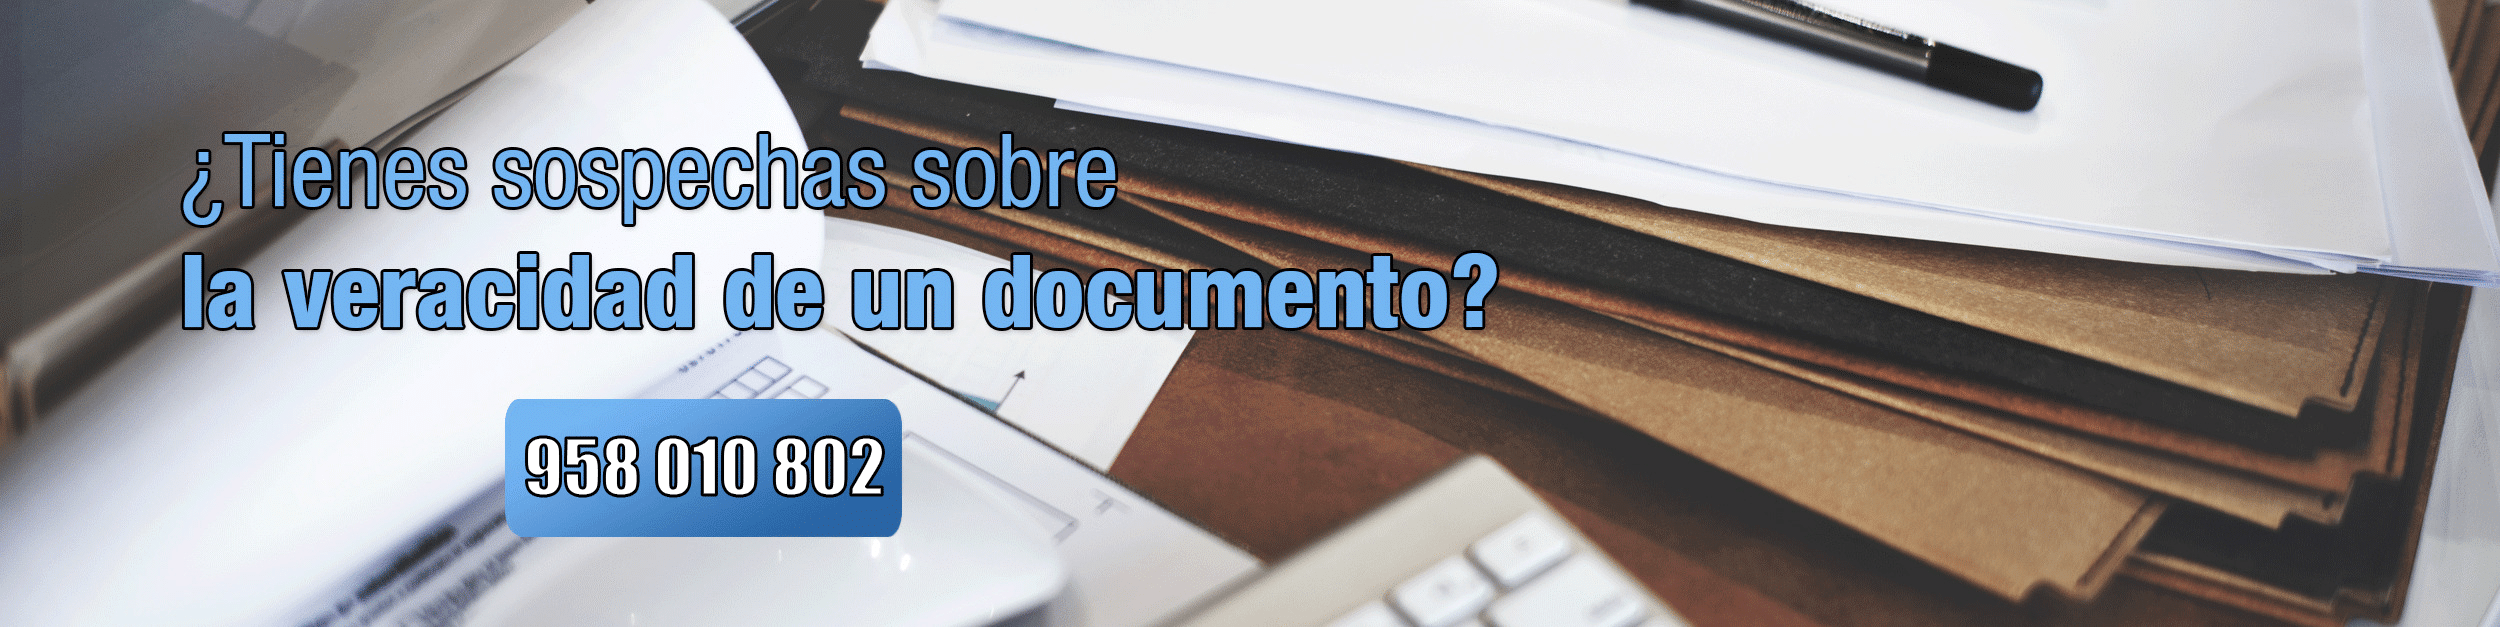 Falsedad documental Perito Informático Málaga